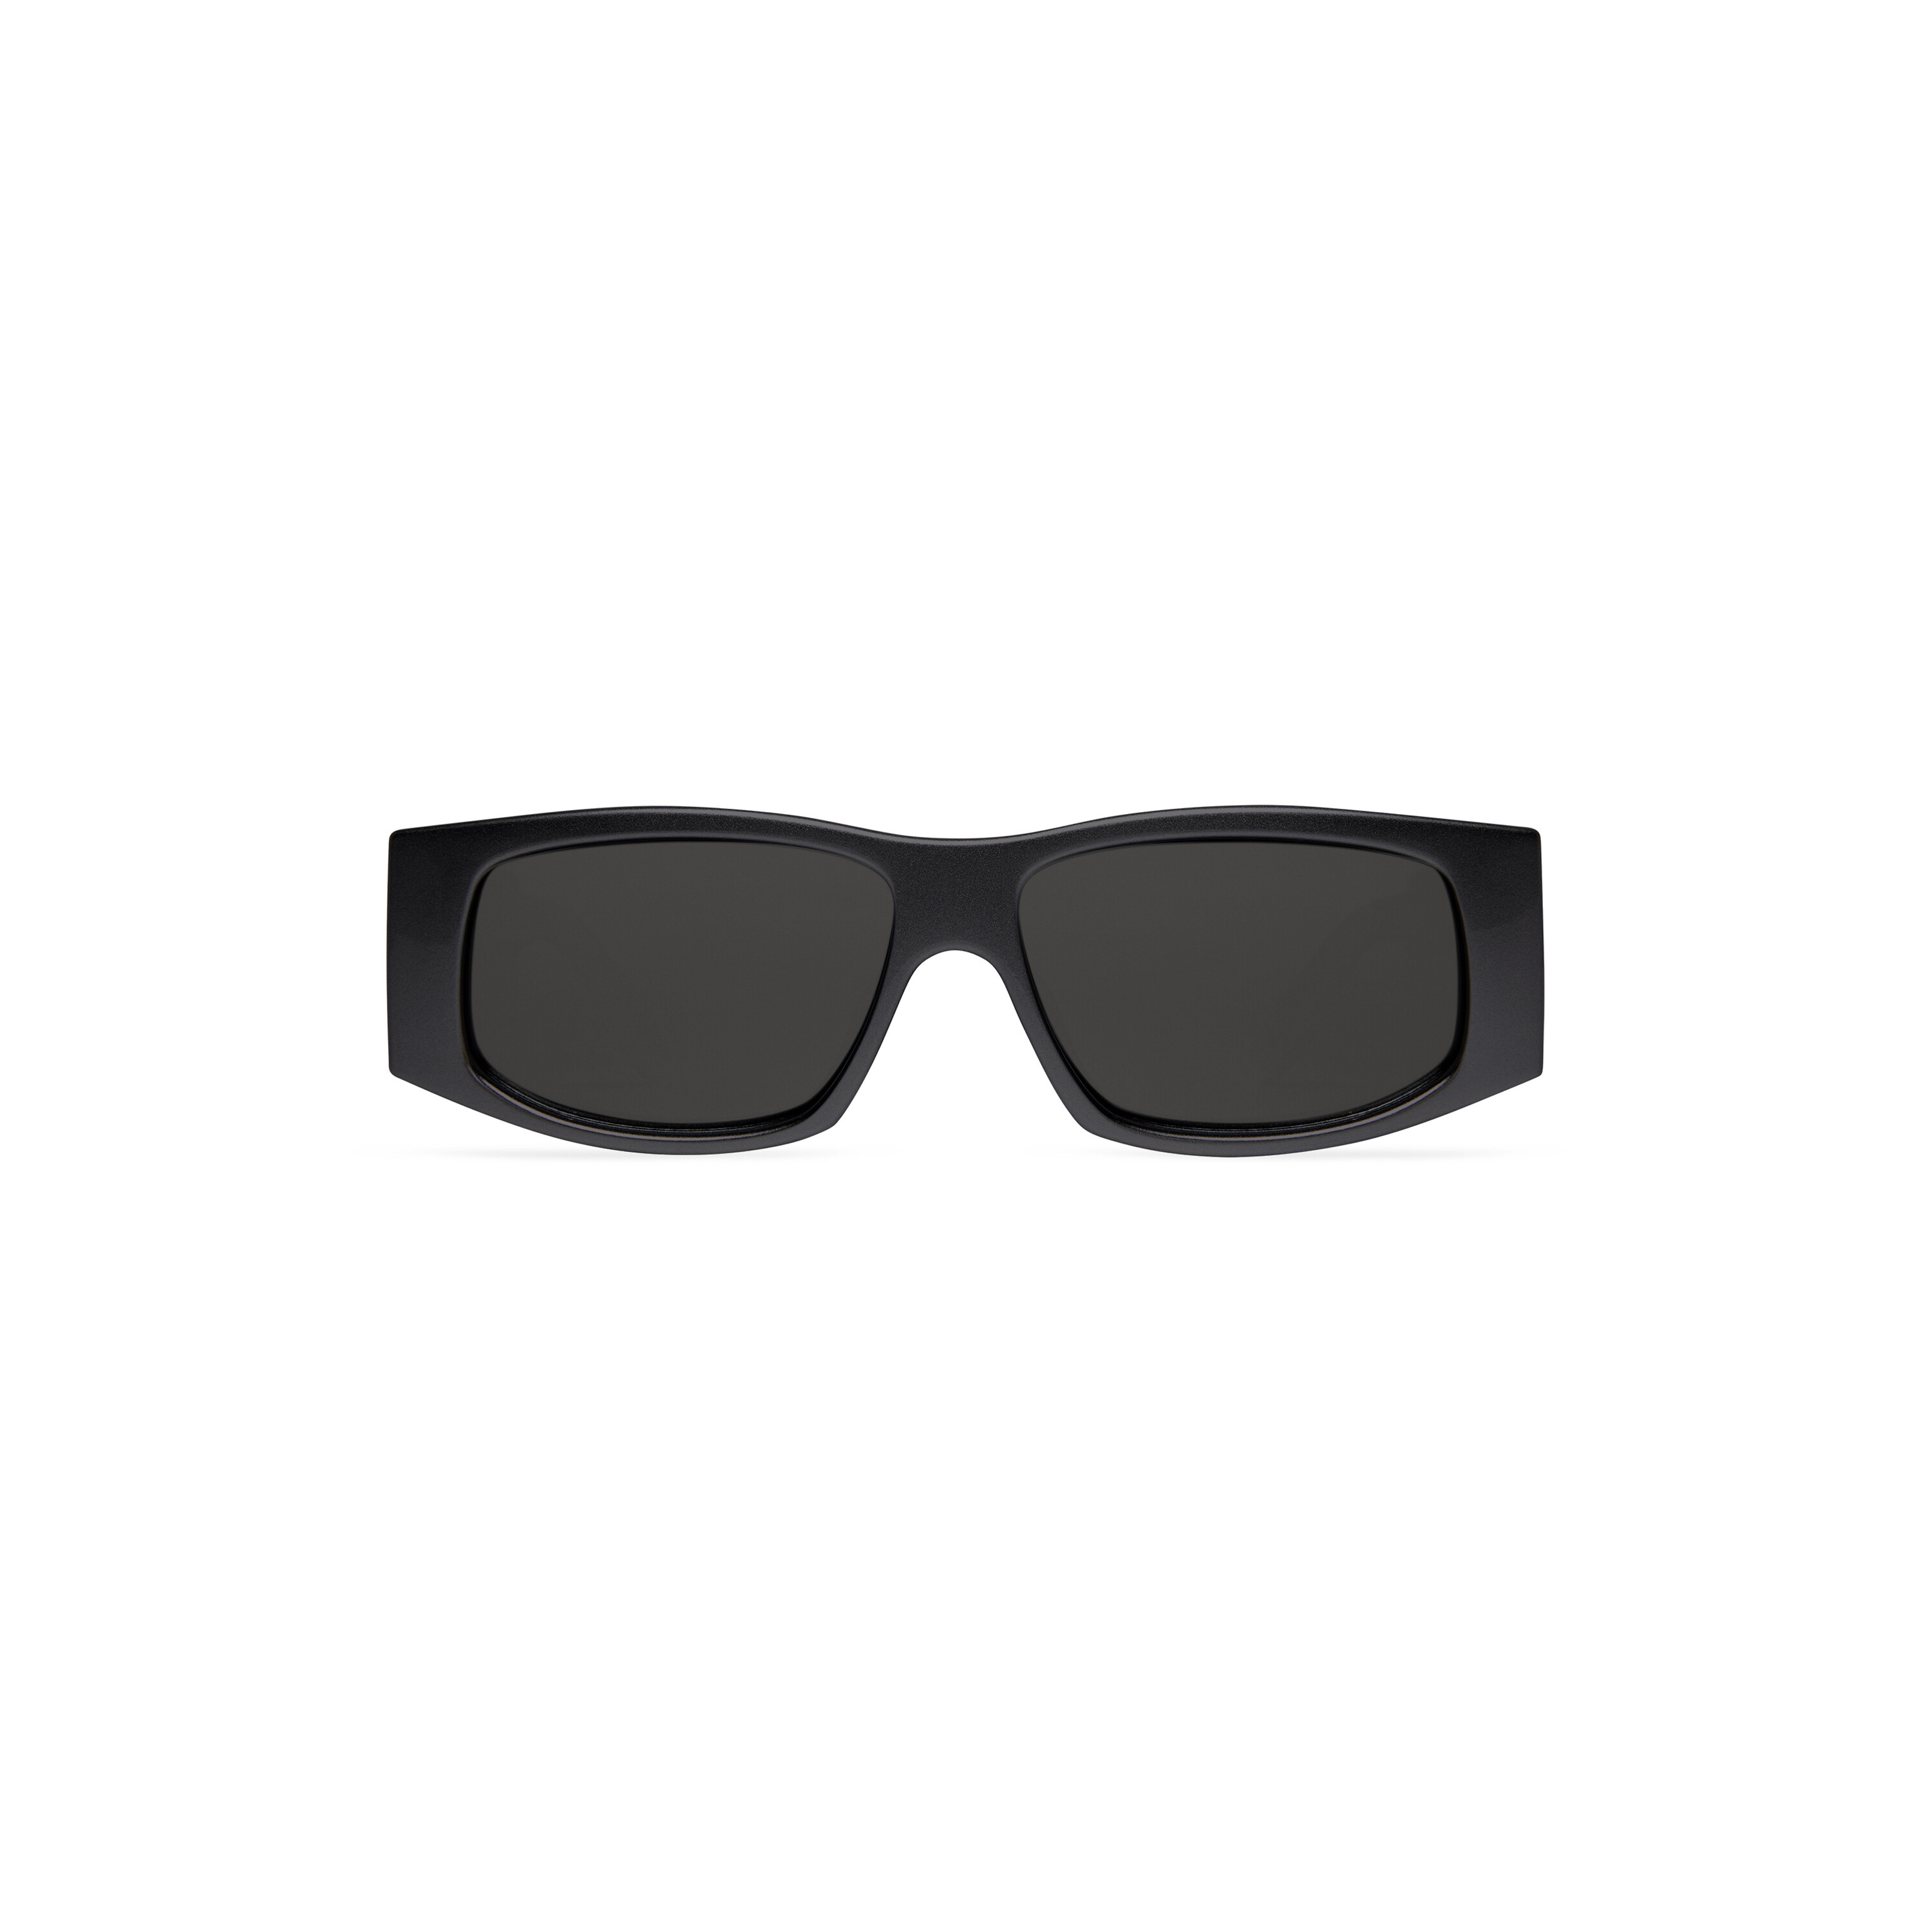 DG Logo sunglasses in Black | Dolce&Gabbana®